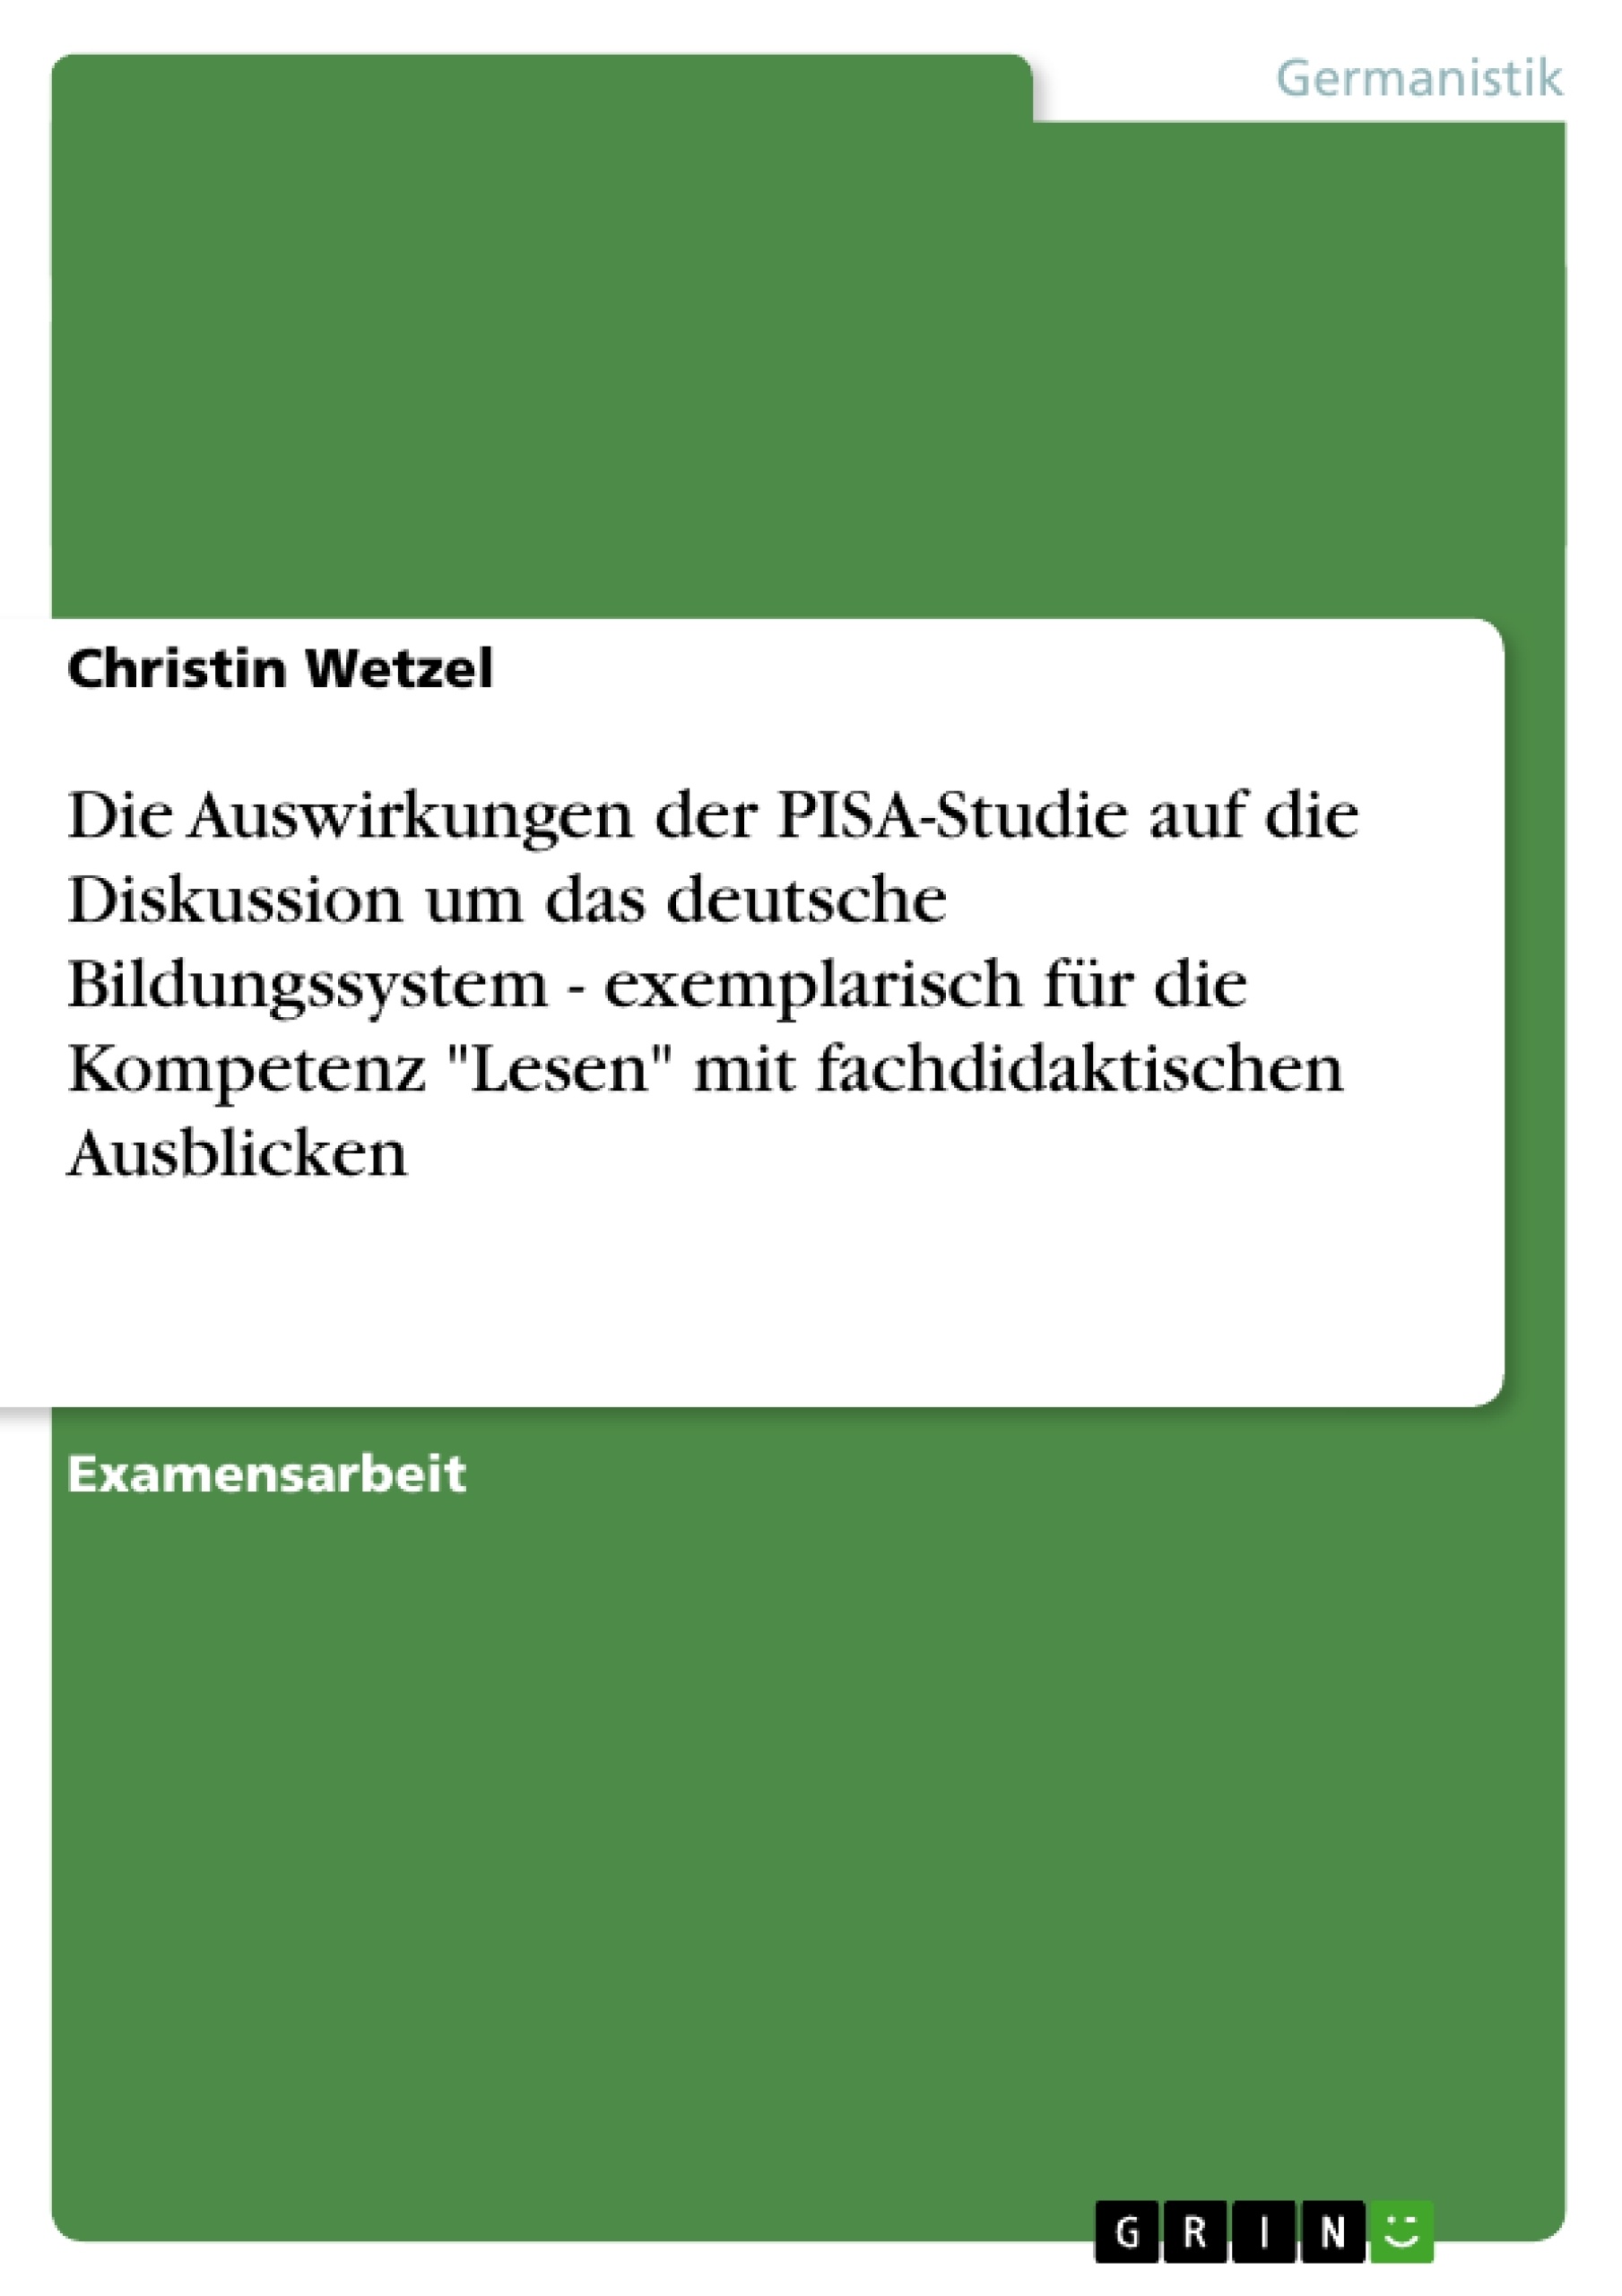 Titel: Die Auswirkungen der PISA-Studie auf die Diskussion um das deutsche Bildungssystem - exemplarisch für die Kompetenz "Lesen" mit fachdidaktischen Ausblicken